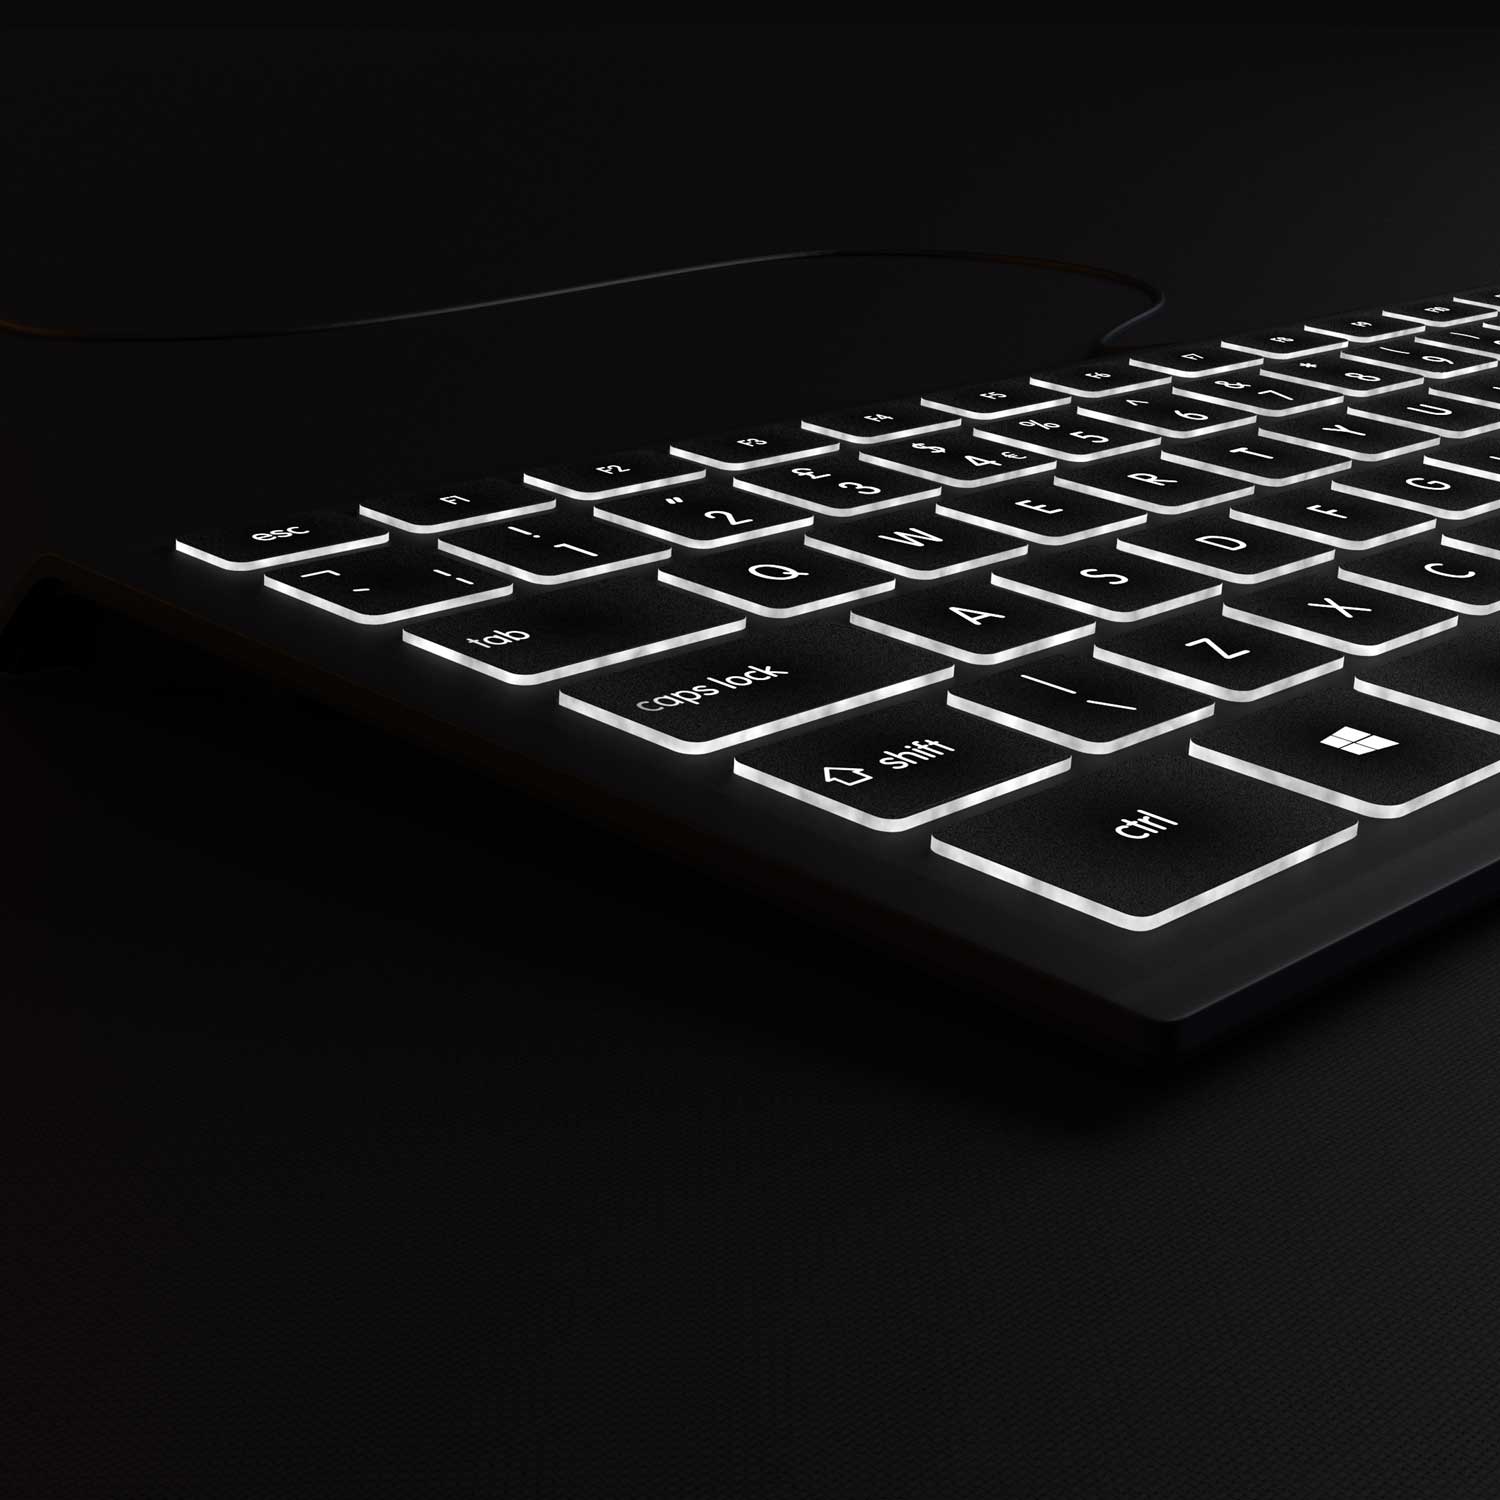 Backlit PC Keyboard - Standard Keyboard - Editors Keys